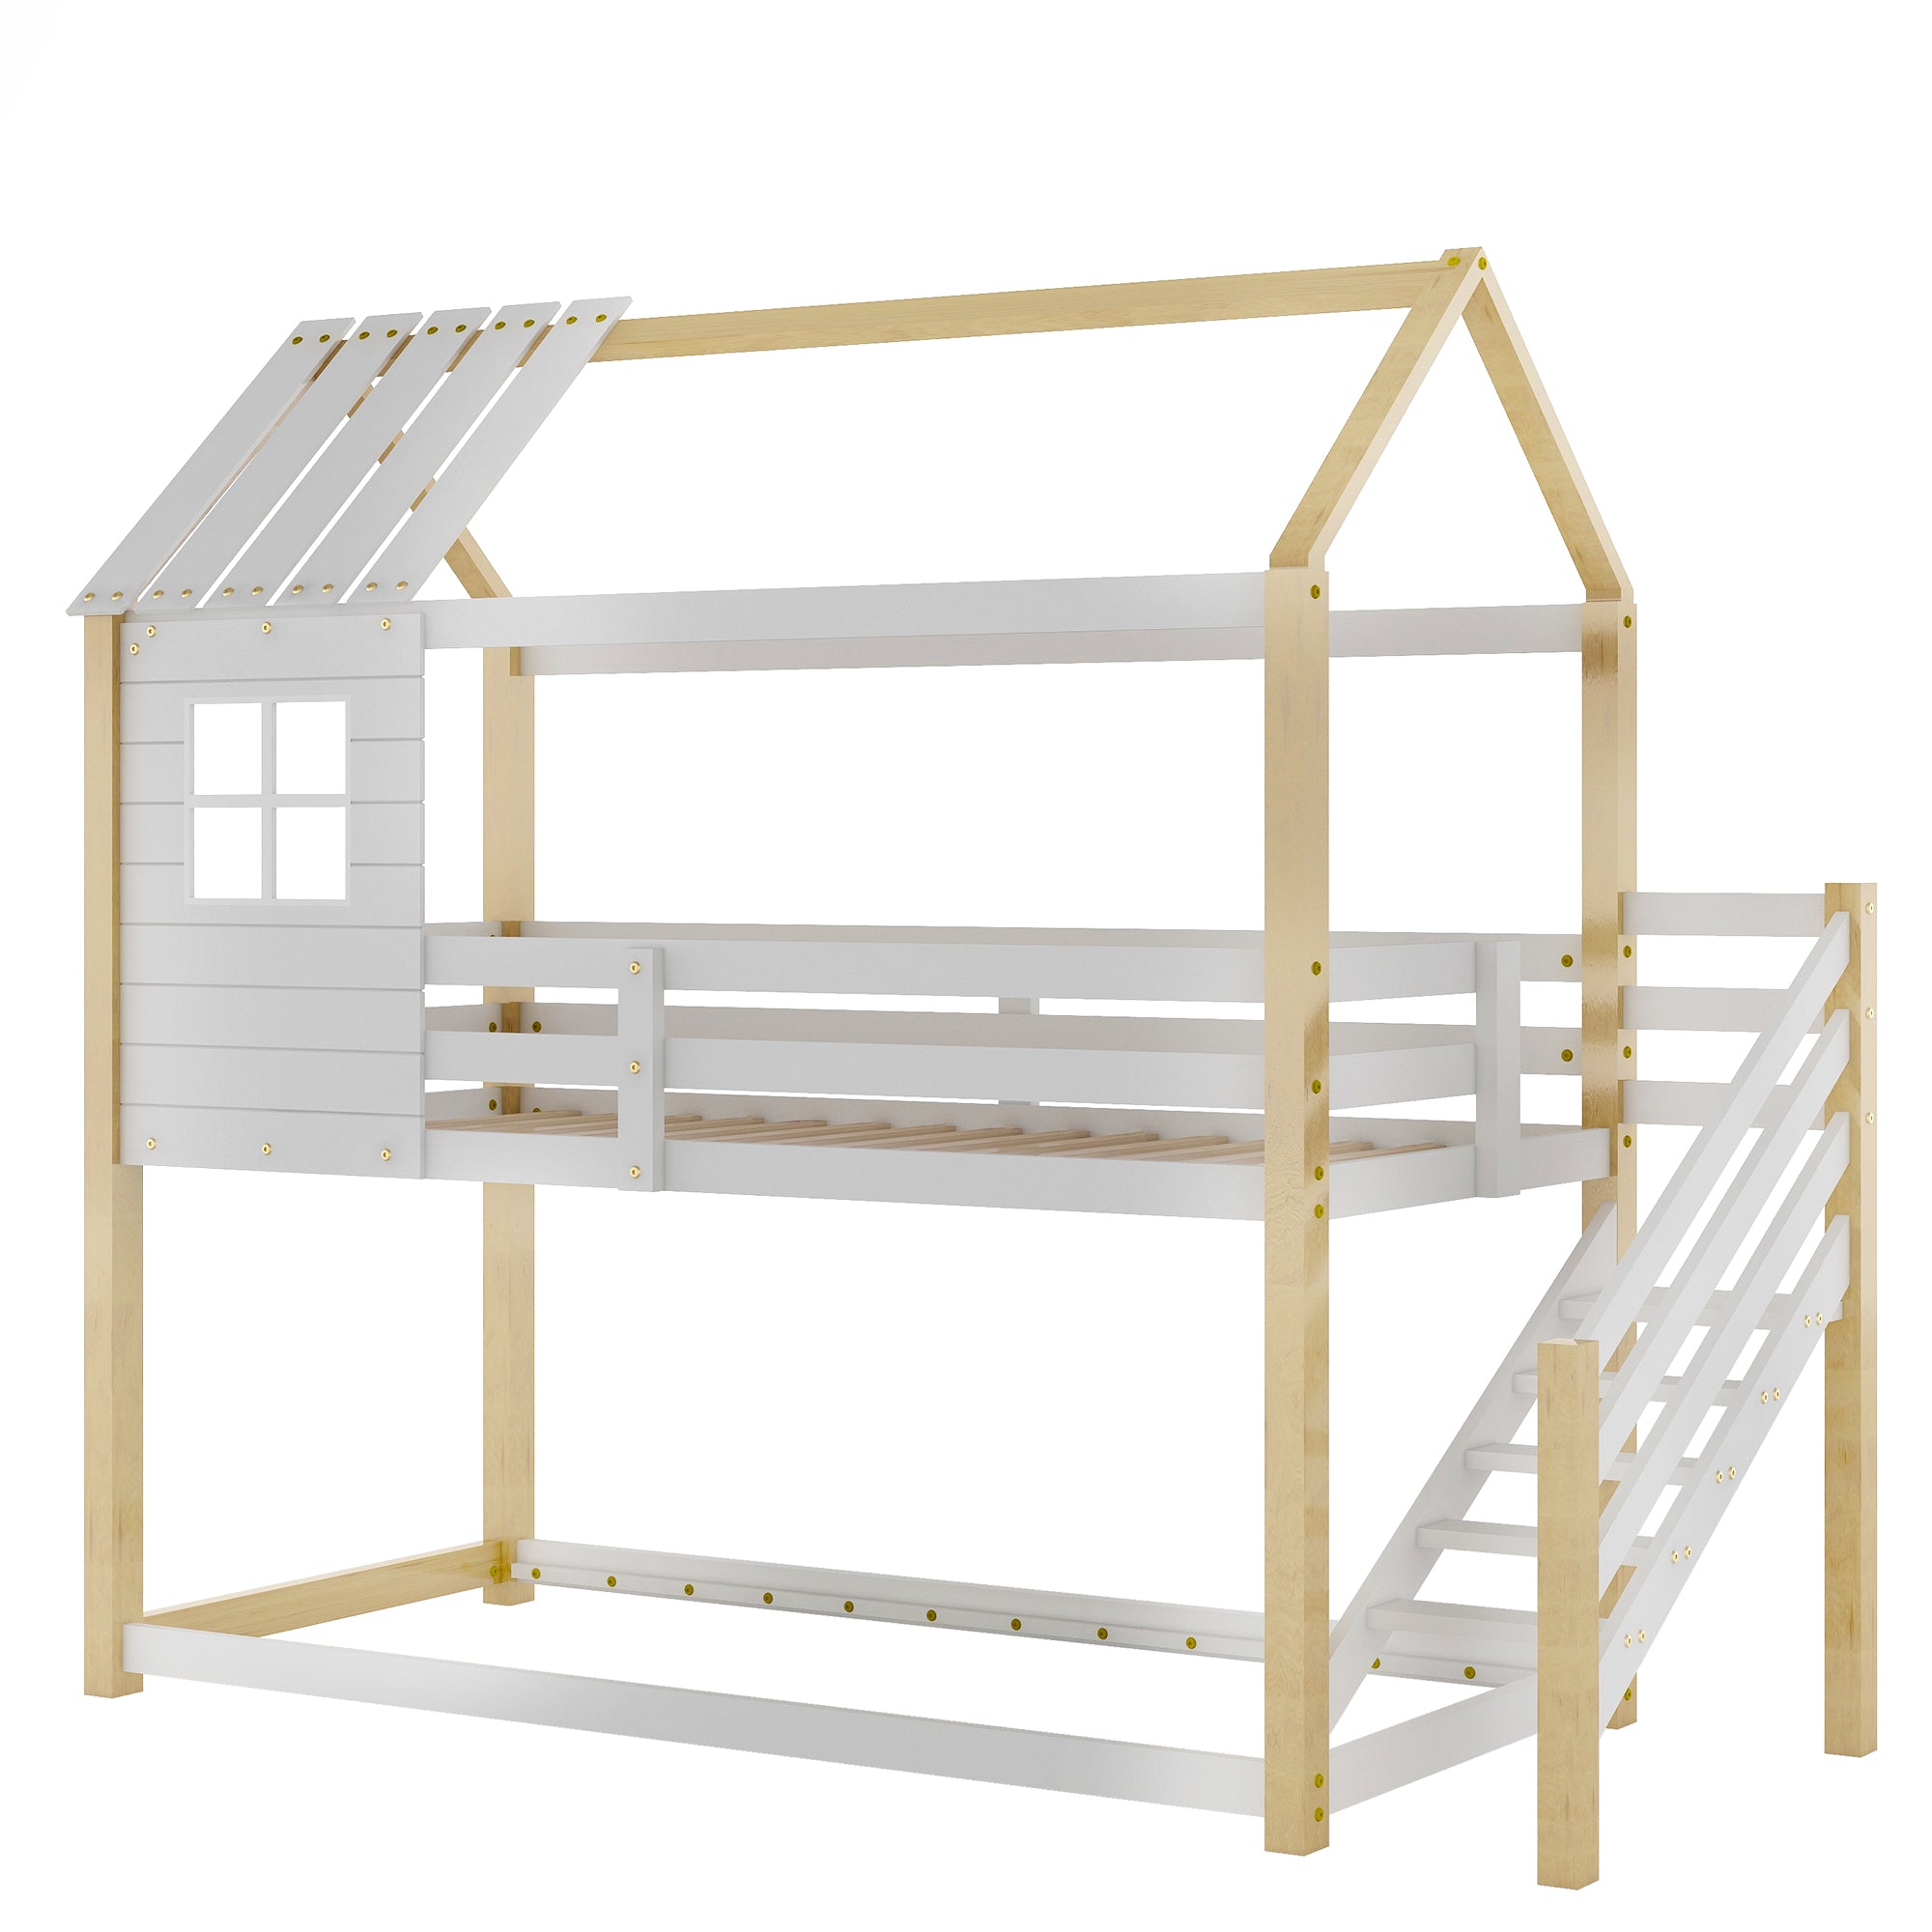 Etagenbett, Bett mit Ecktreppe, Hausbett, Kinderbett mit Fallschutz und Gitter, mit Fenster, Rahmen aus Kiefer, weiß (200x90cm)